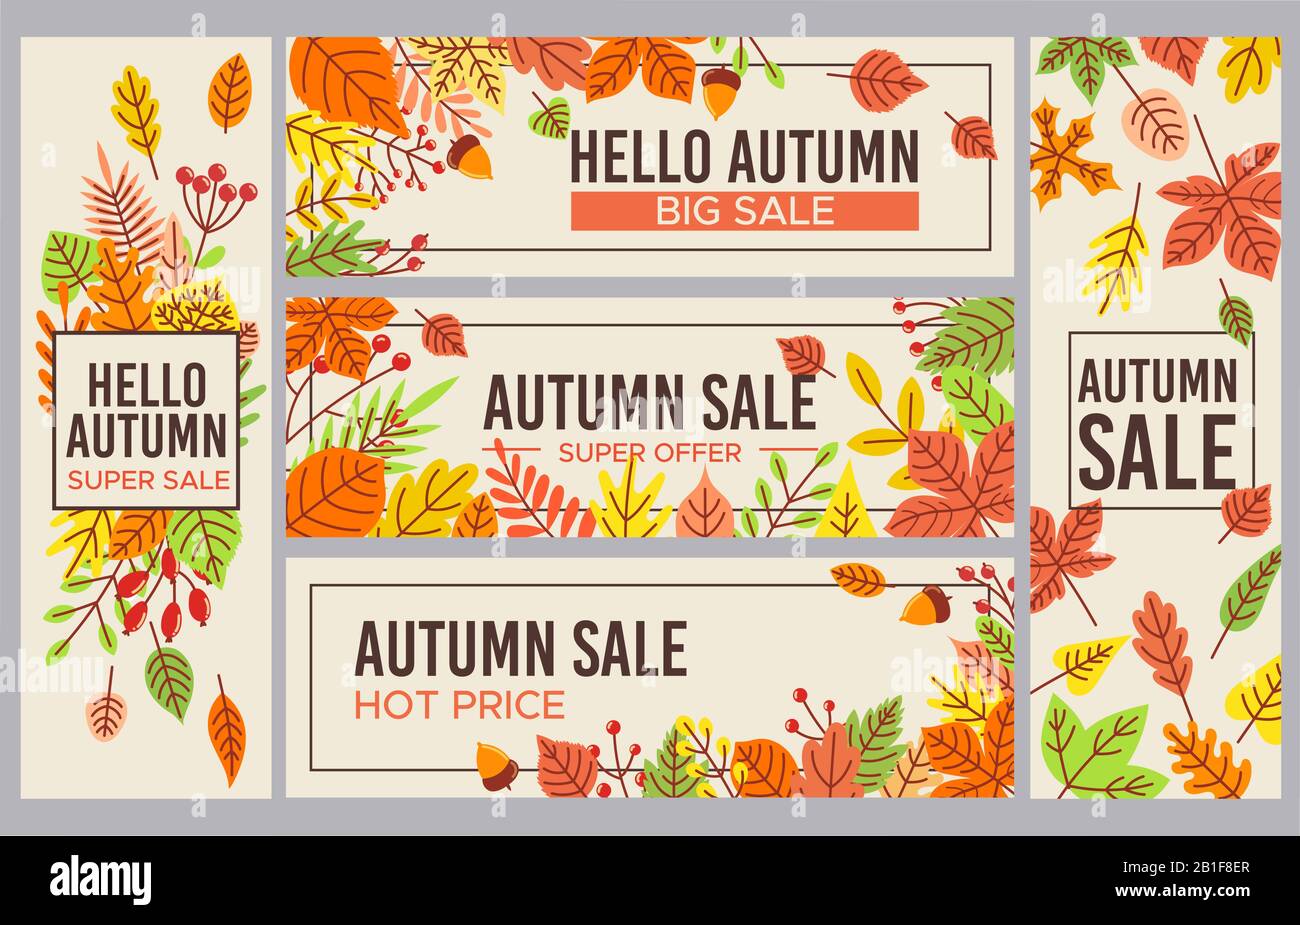 Banner für den Herbstverkauf. Werbebanner für die Herbstsaison, Saison-Rabatt und herbstliches Poster mit gestürzten Blättern Stock Vektor